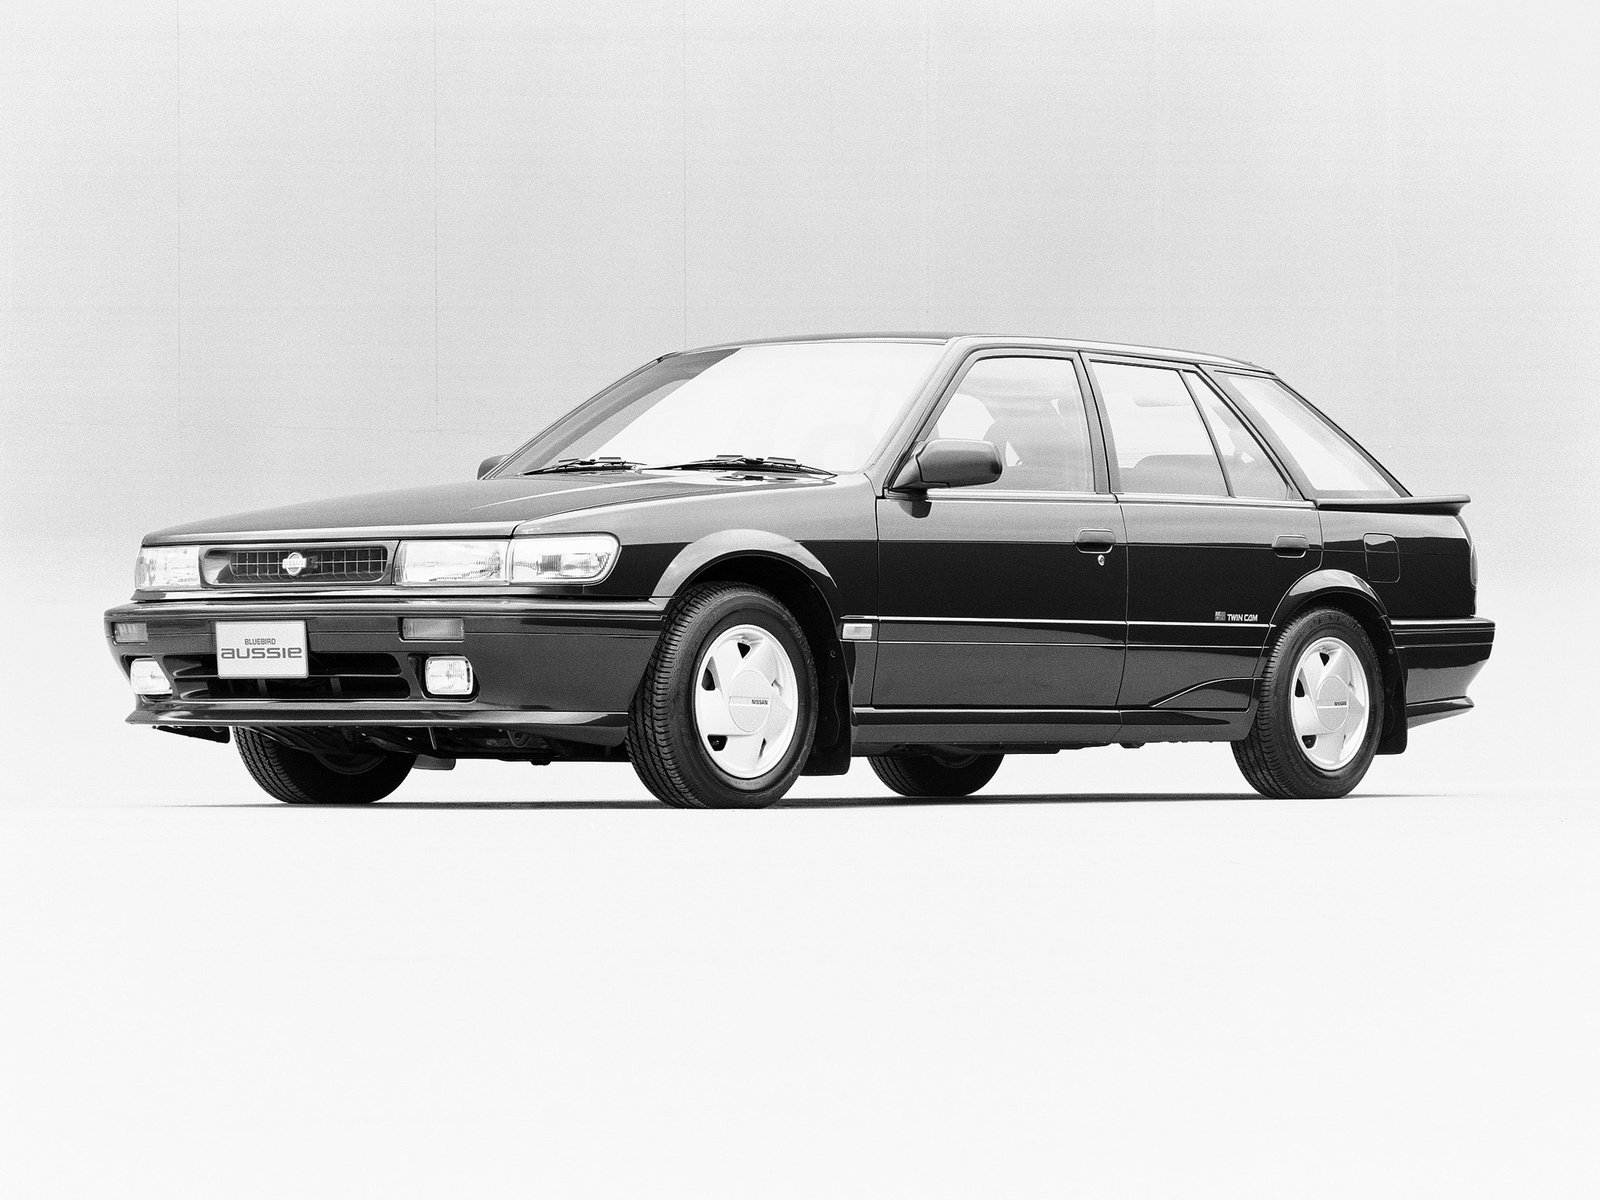 Nissan Bluebird Aussie (HAU12) '1991. Ð¥Ð°Ñ€Ð°ÐºÑ‚ÐµÑ€Ð¸ÑÑ‚Ð¸ÐºÐ¸ Ð¸Ð·Ð¾Ð±Ñ€Ð°Ð¶ÐµÐ½Ð¸Ñ: